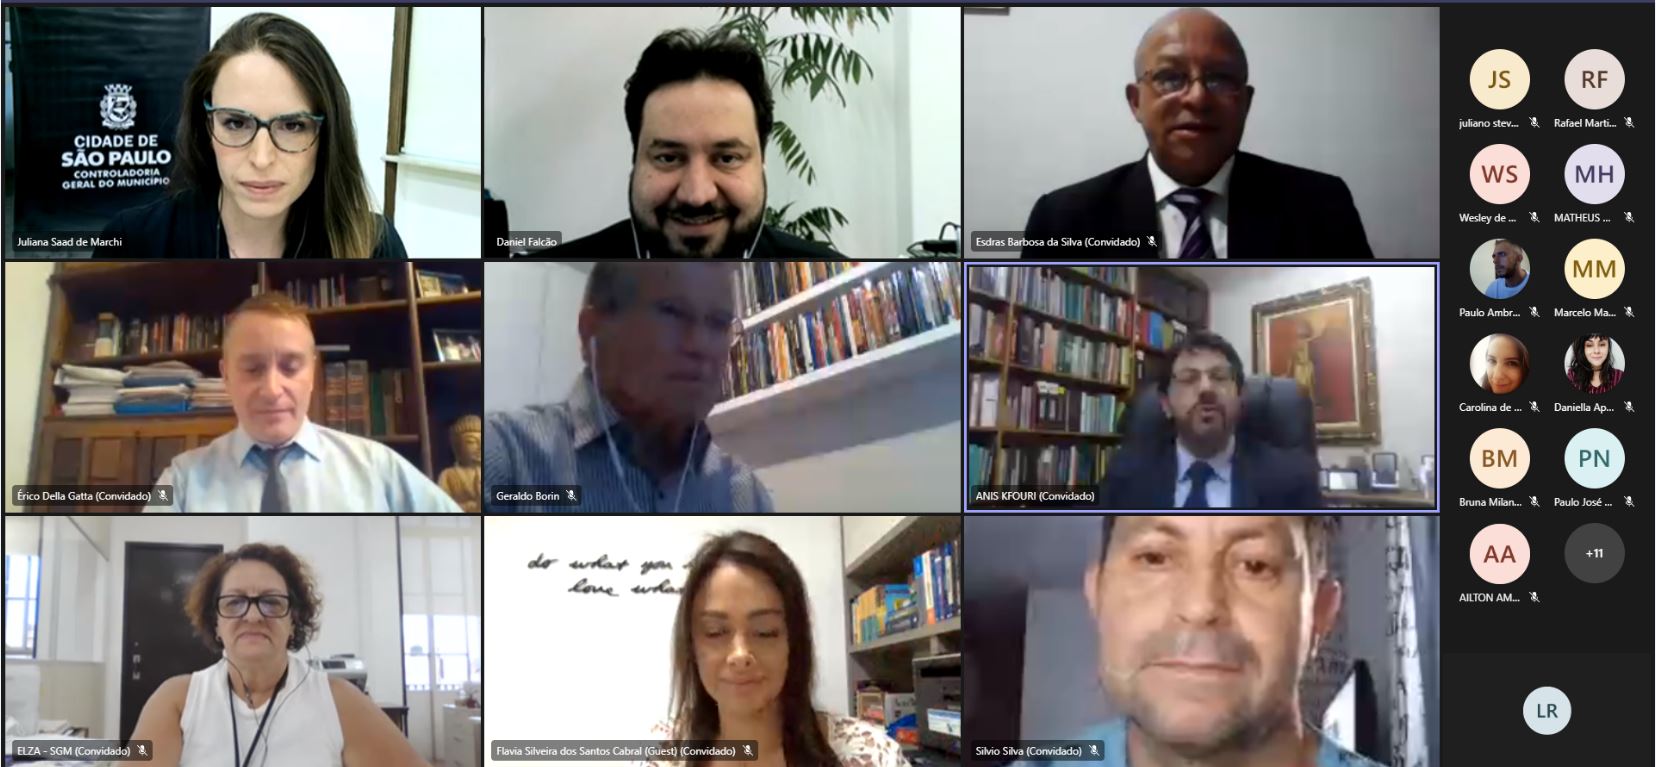 Print de tela de reunião virtual com representantes do Conselho de Usuários dos Serviços Públicos de São Paulo, entre eles está o Controlador Geral do Município, Daniel Falcão.